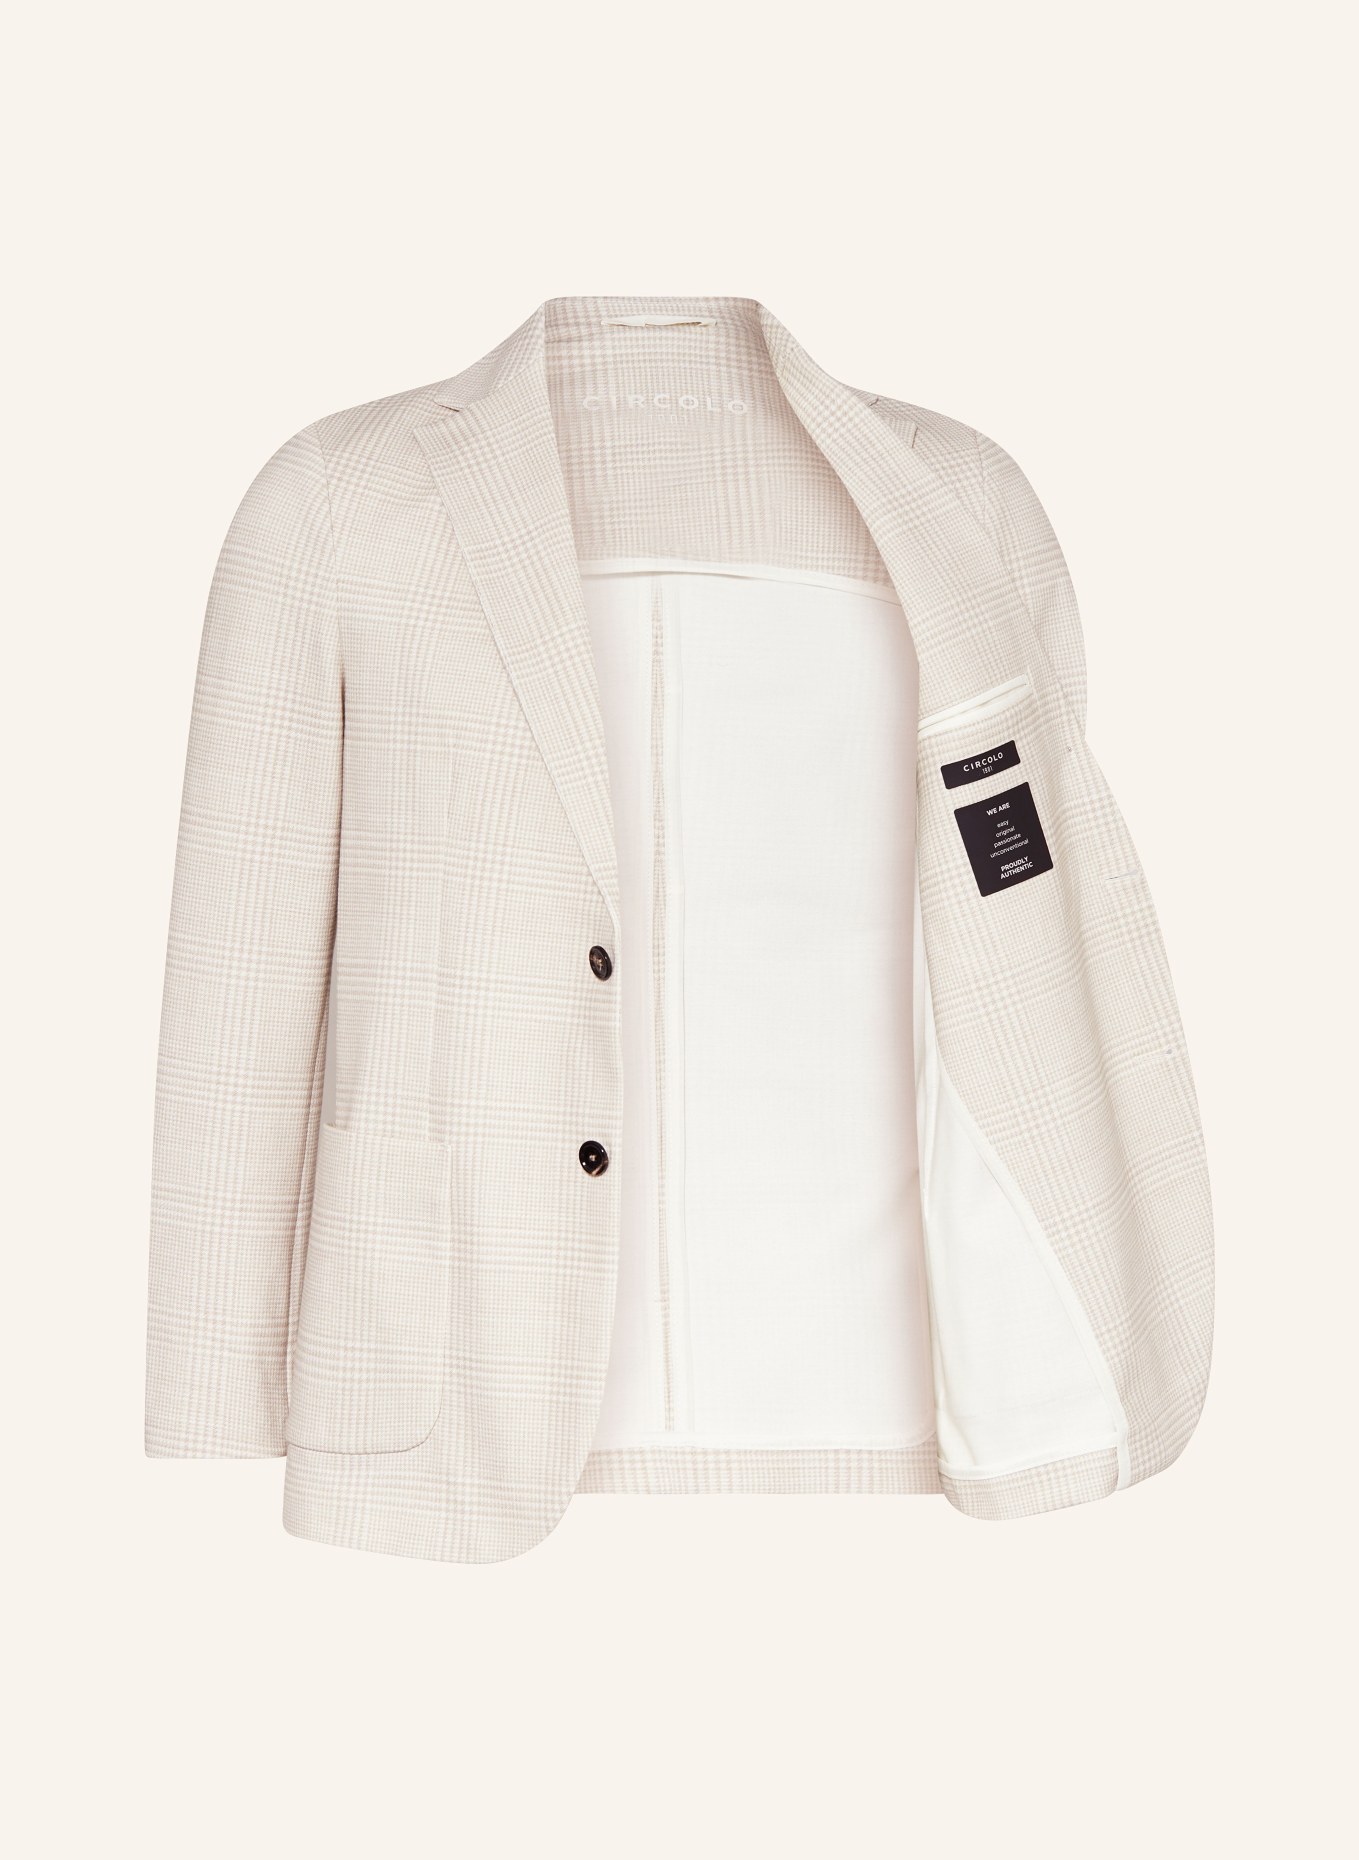 CIRCOLO 1901 Suit jacket extra slim fit, Color: NATUR NATURALE (Image 4)